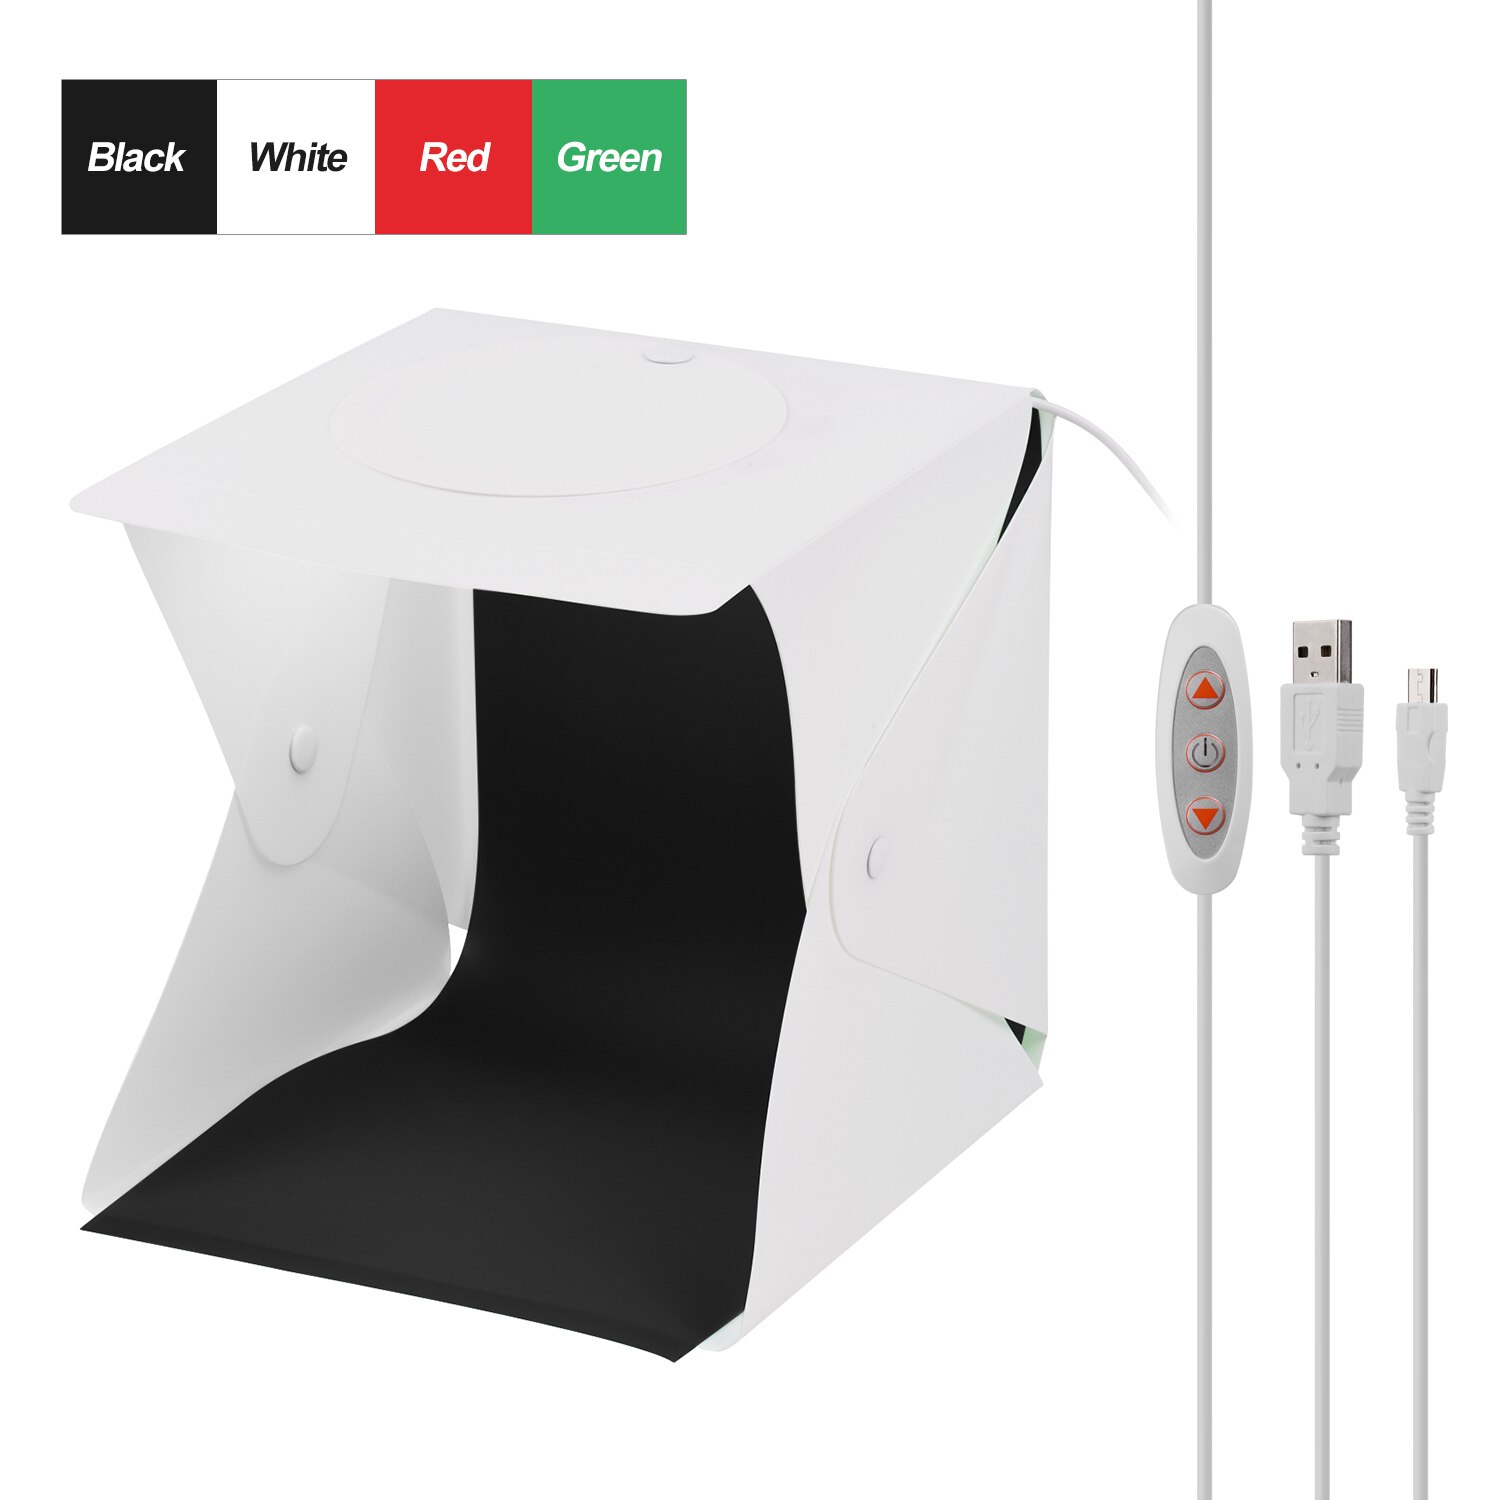 22*23*24 Cm Opvouwbare Studio Light Box Led Foto Fotografie Schieten Tent Softbox 5500K Met Wit zwart Groen Rood Achtergronden